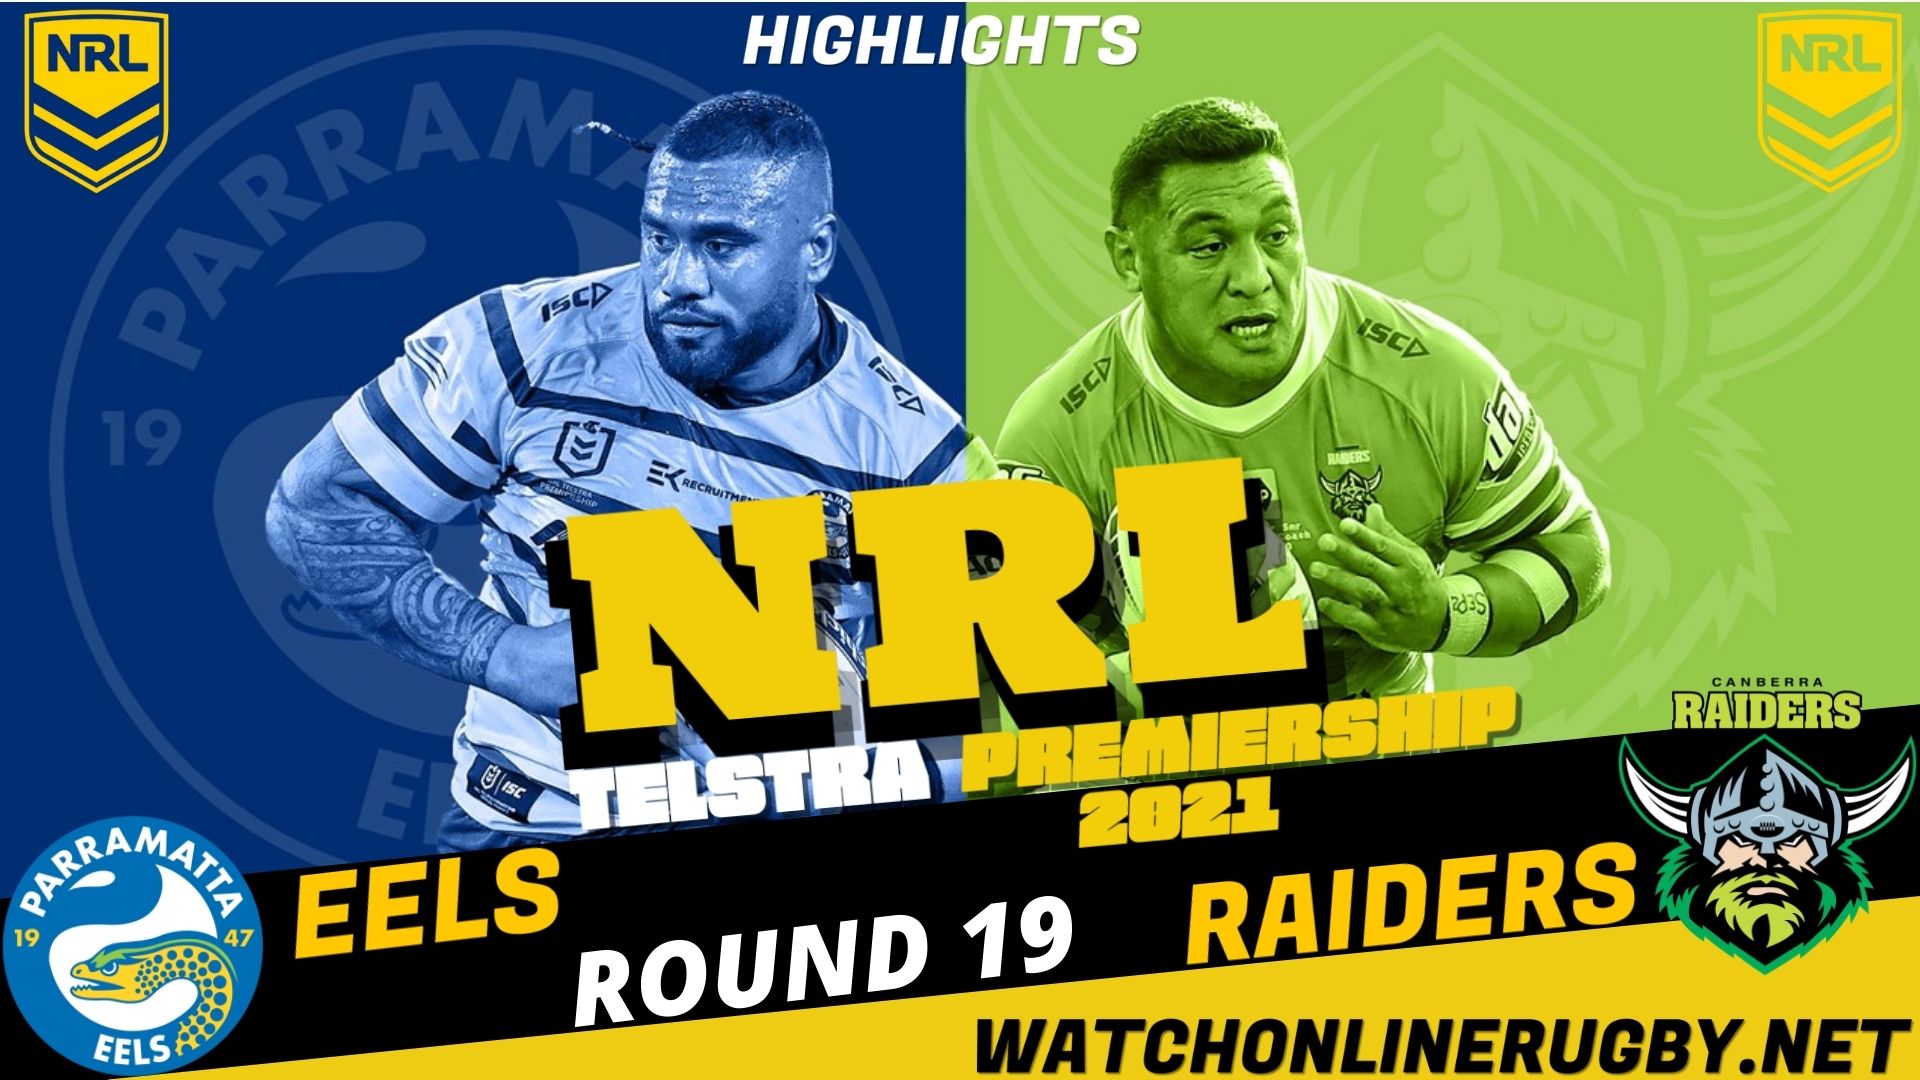 Eels Vs Raiders Highlights RD 19 NRL Rugby